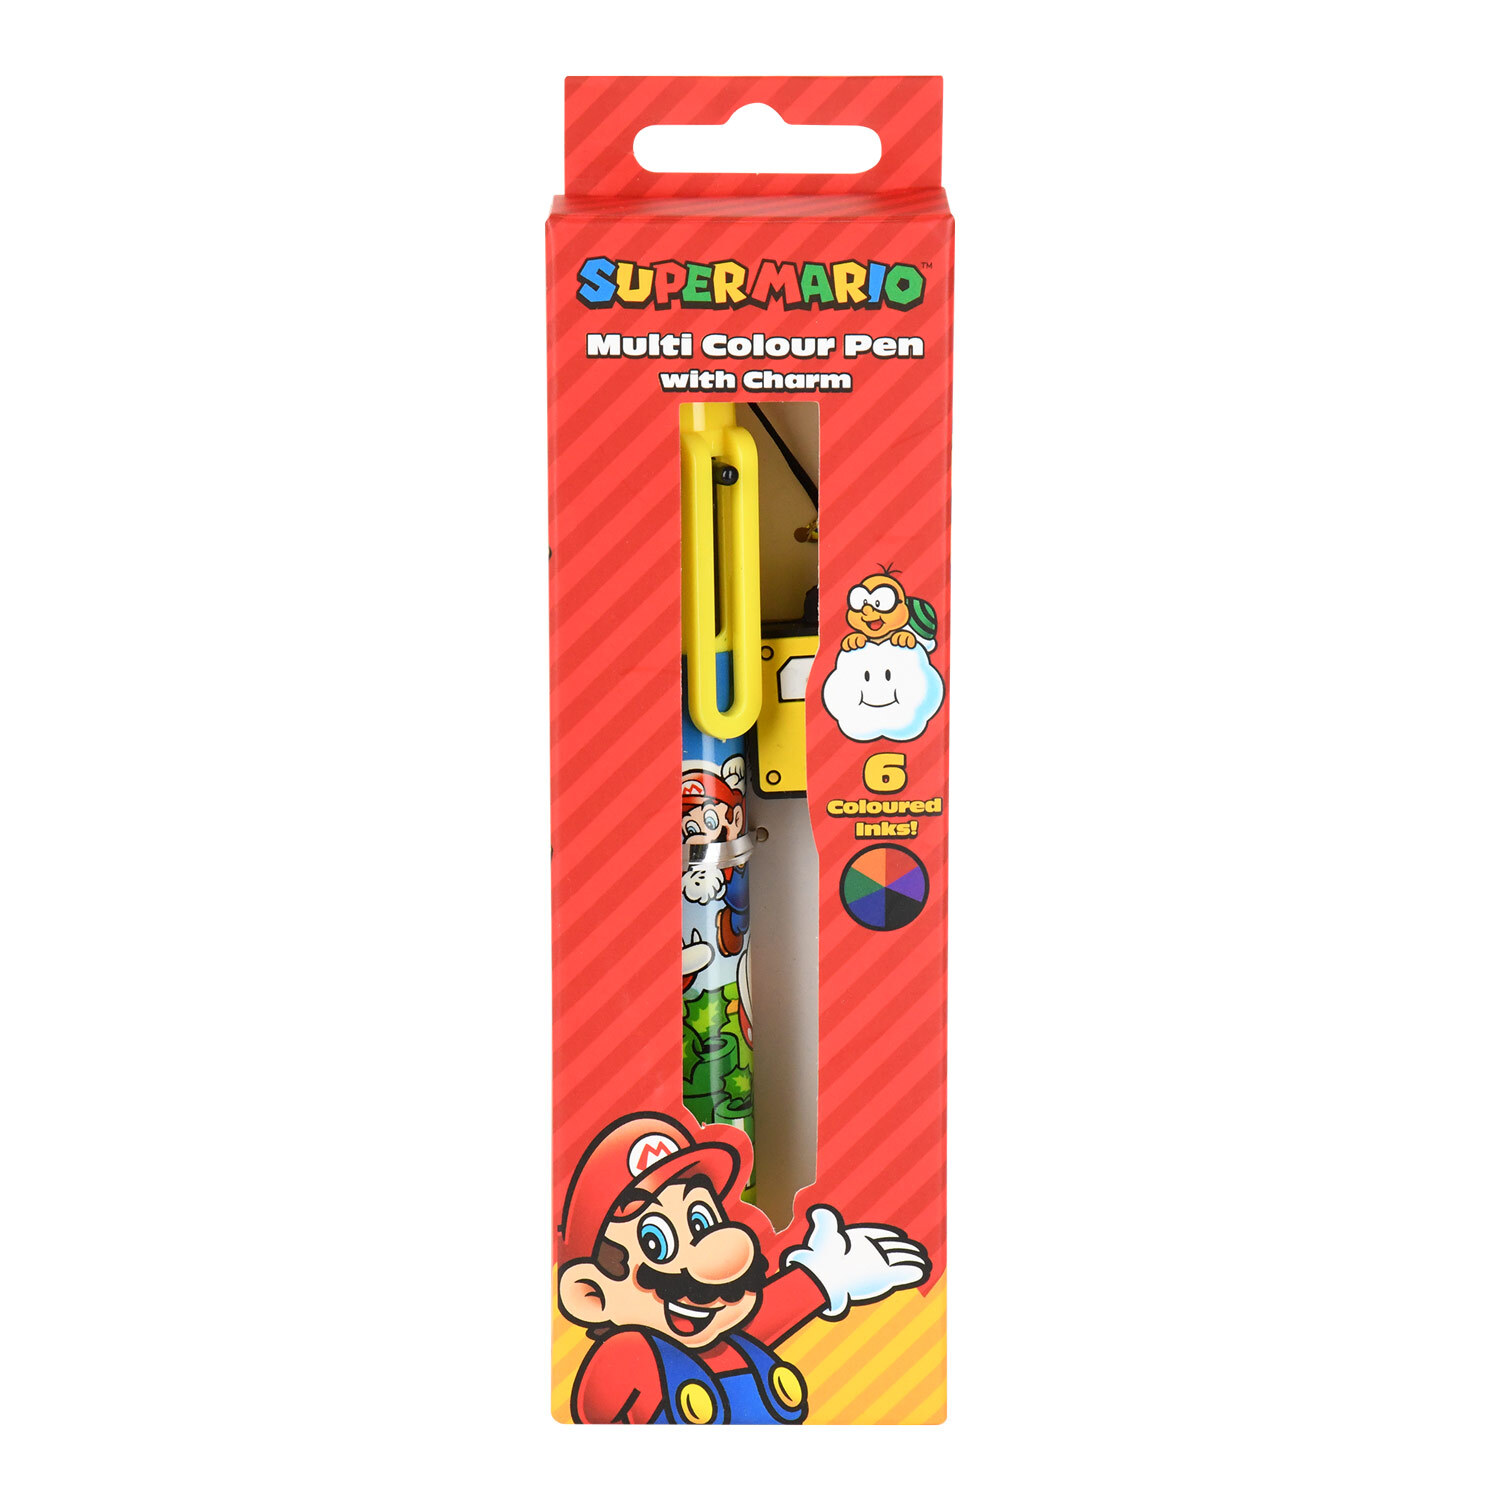 Super Mario Multicolour Pen Image